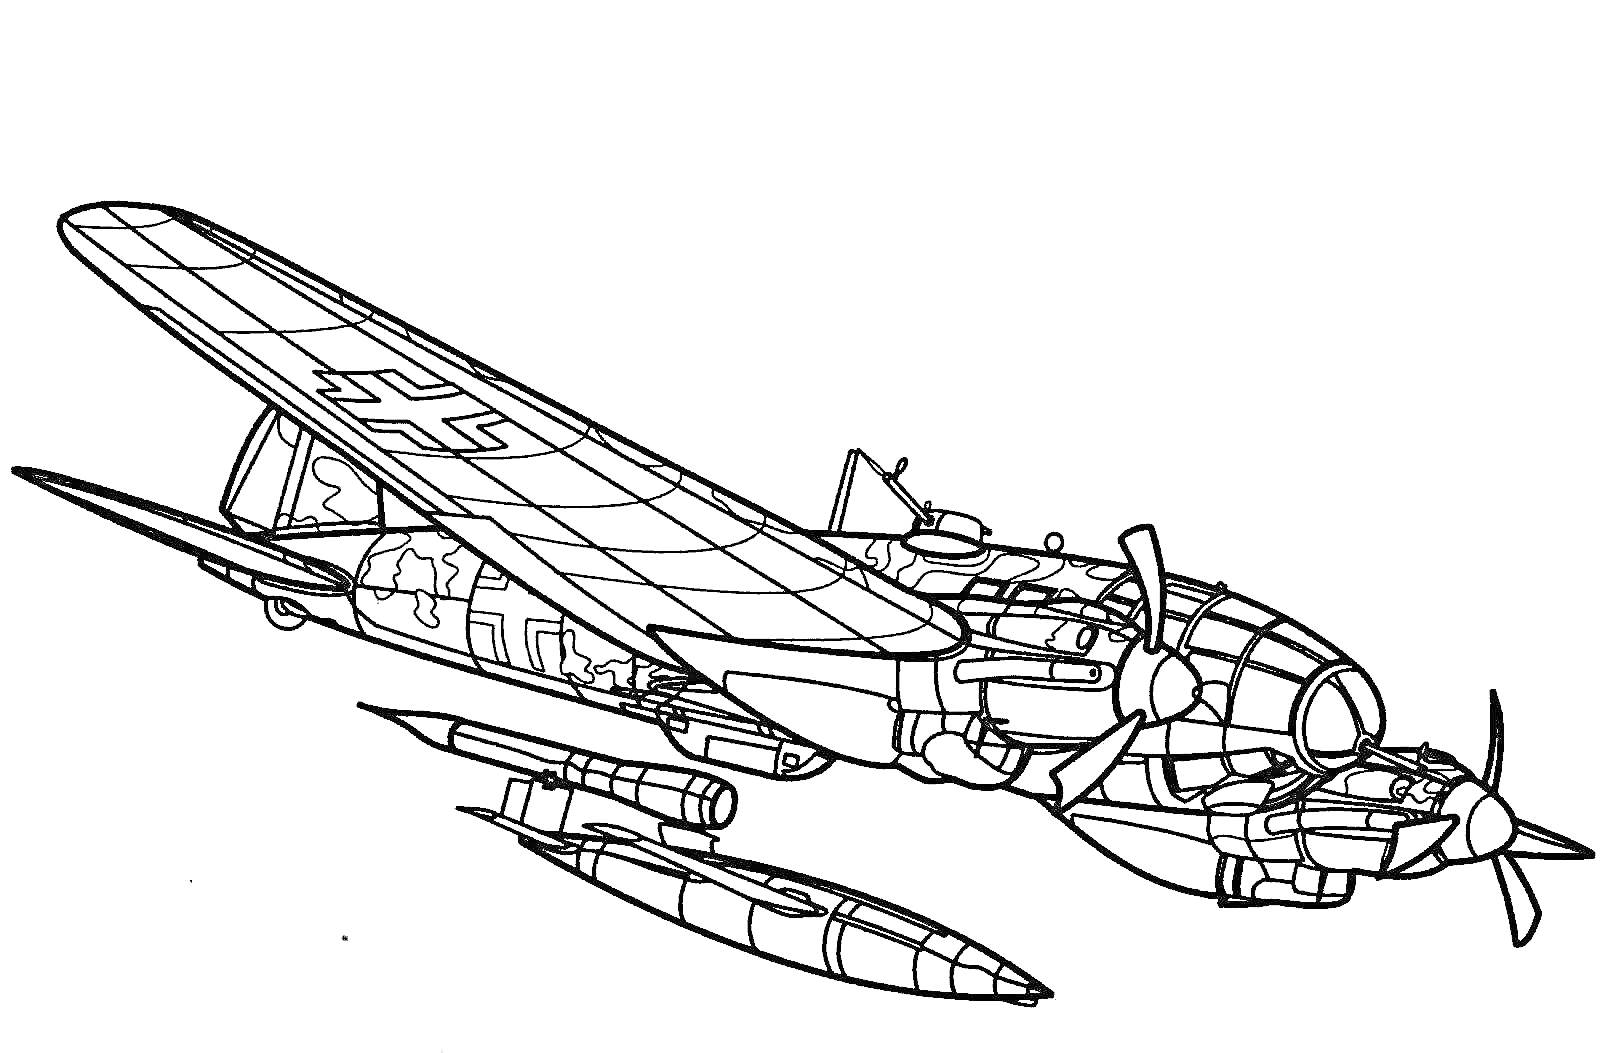 Военный самолет с двумя пропеллерами и подфюзеляжным оборудованием